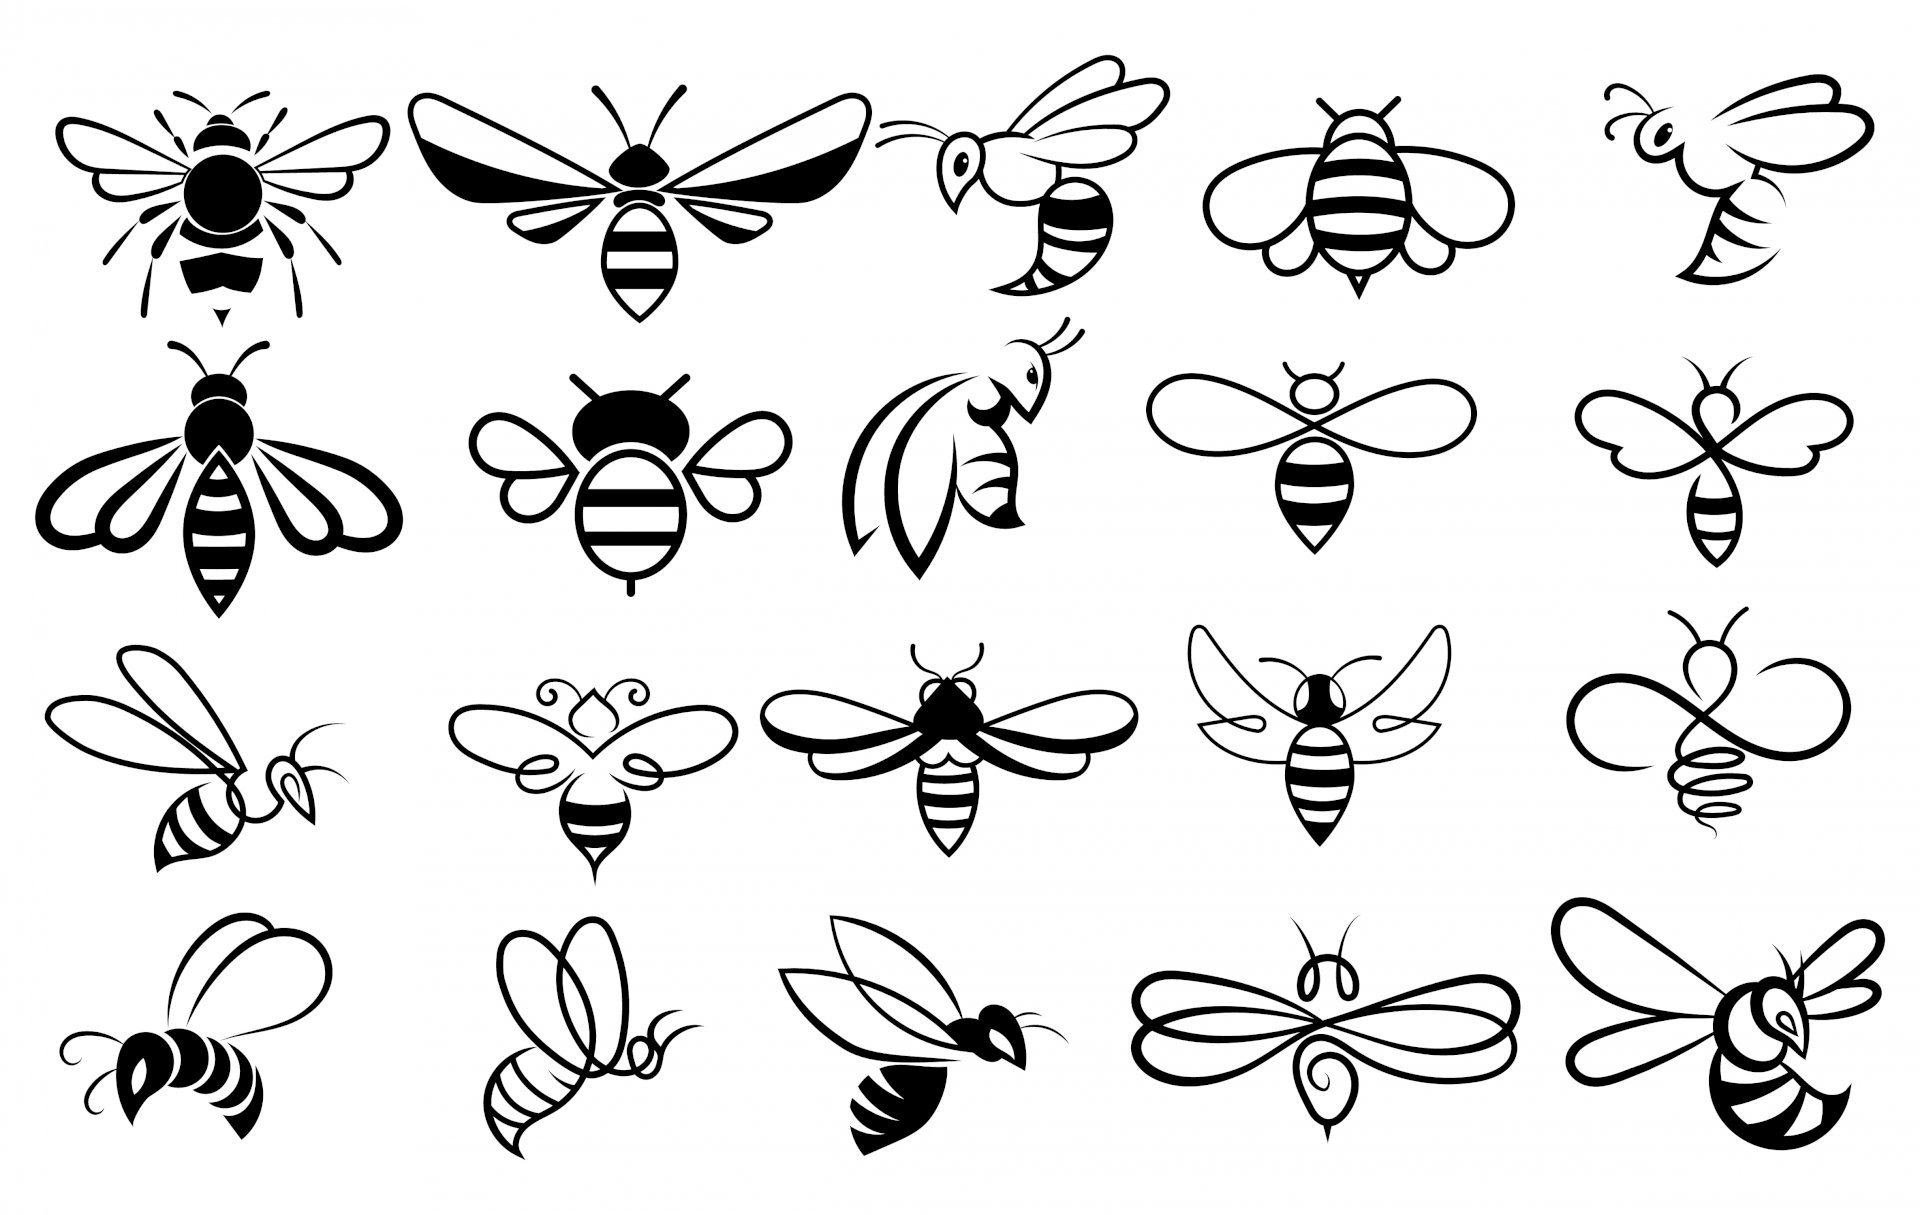 Bumblebee hình Ảnh bản Vẽ  con ong png tải về  Miễn phí trong suốt Màu  Vàng png Tải về